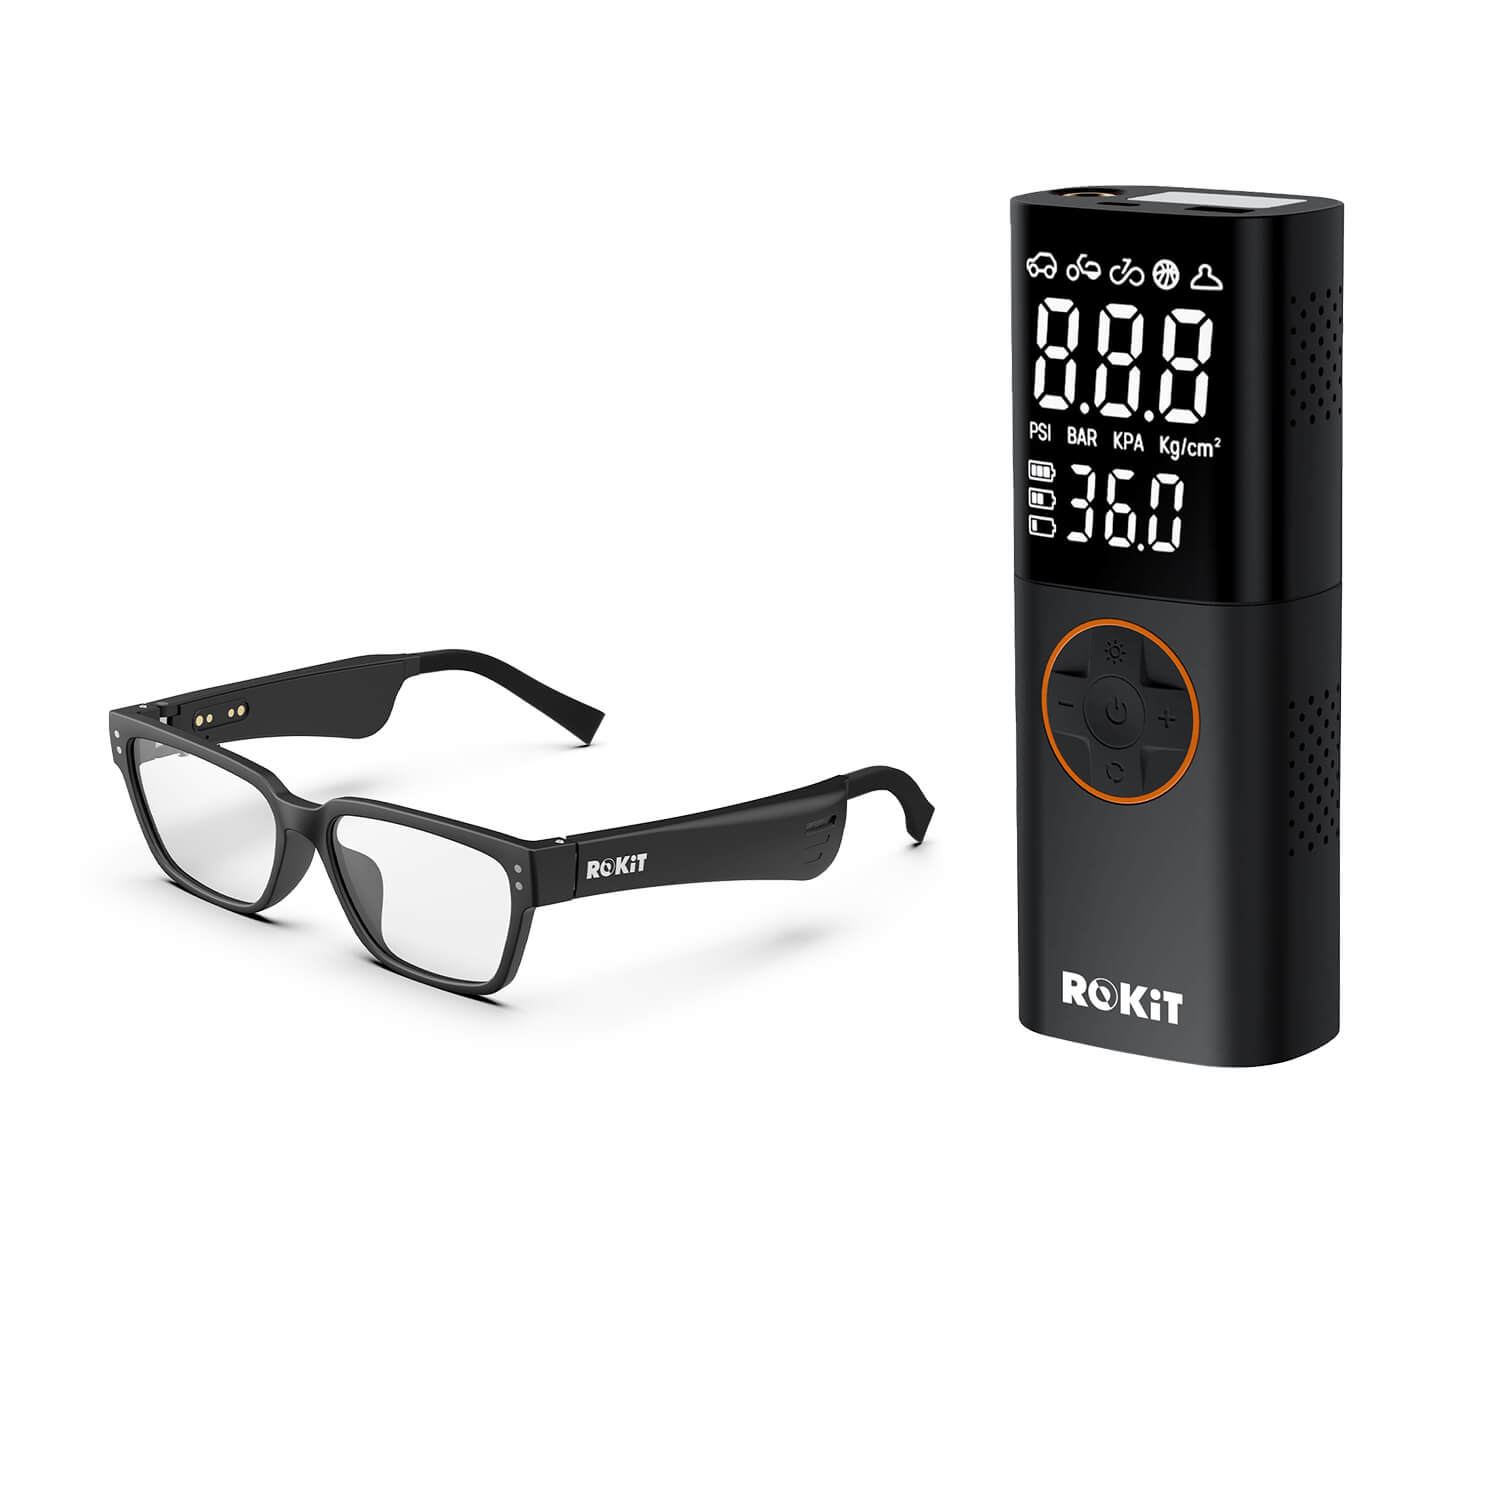 ROKiT Solos 2 Smart Glasses + ROKiT 7800mAh Portable Tire Inflator ROKiT Life